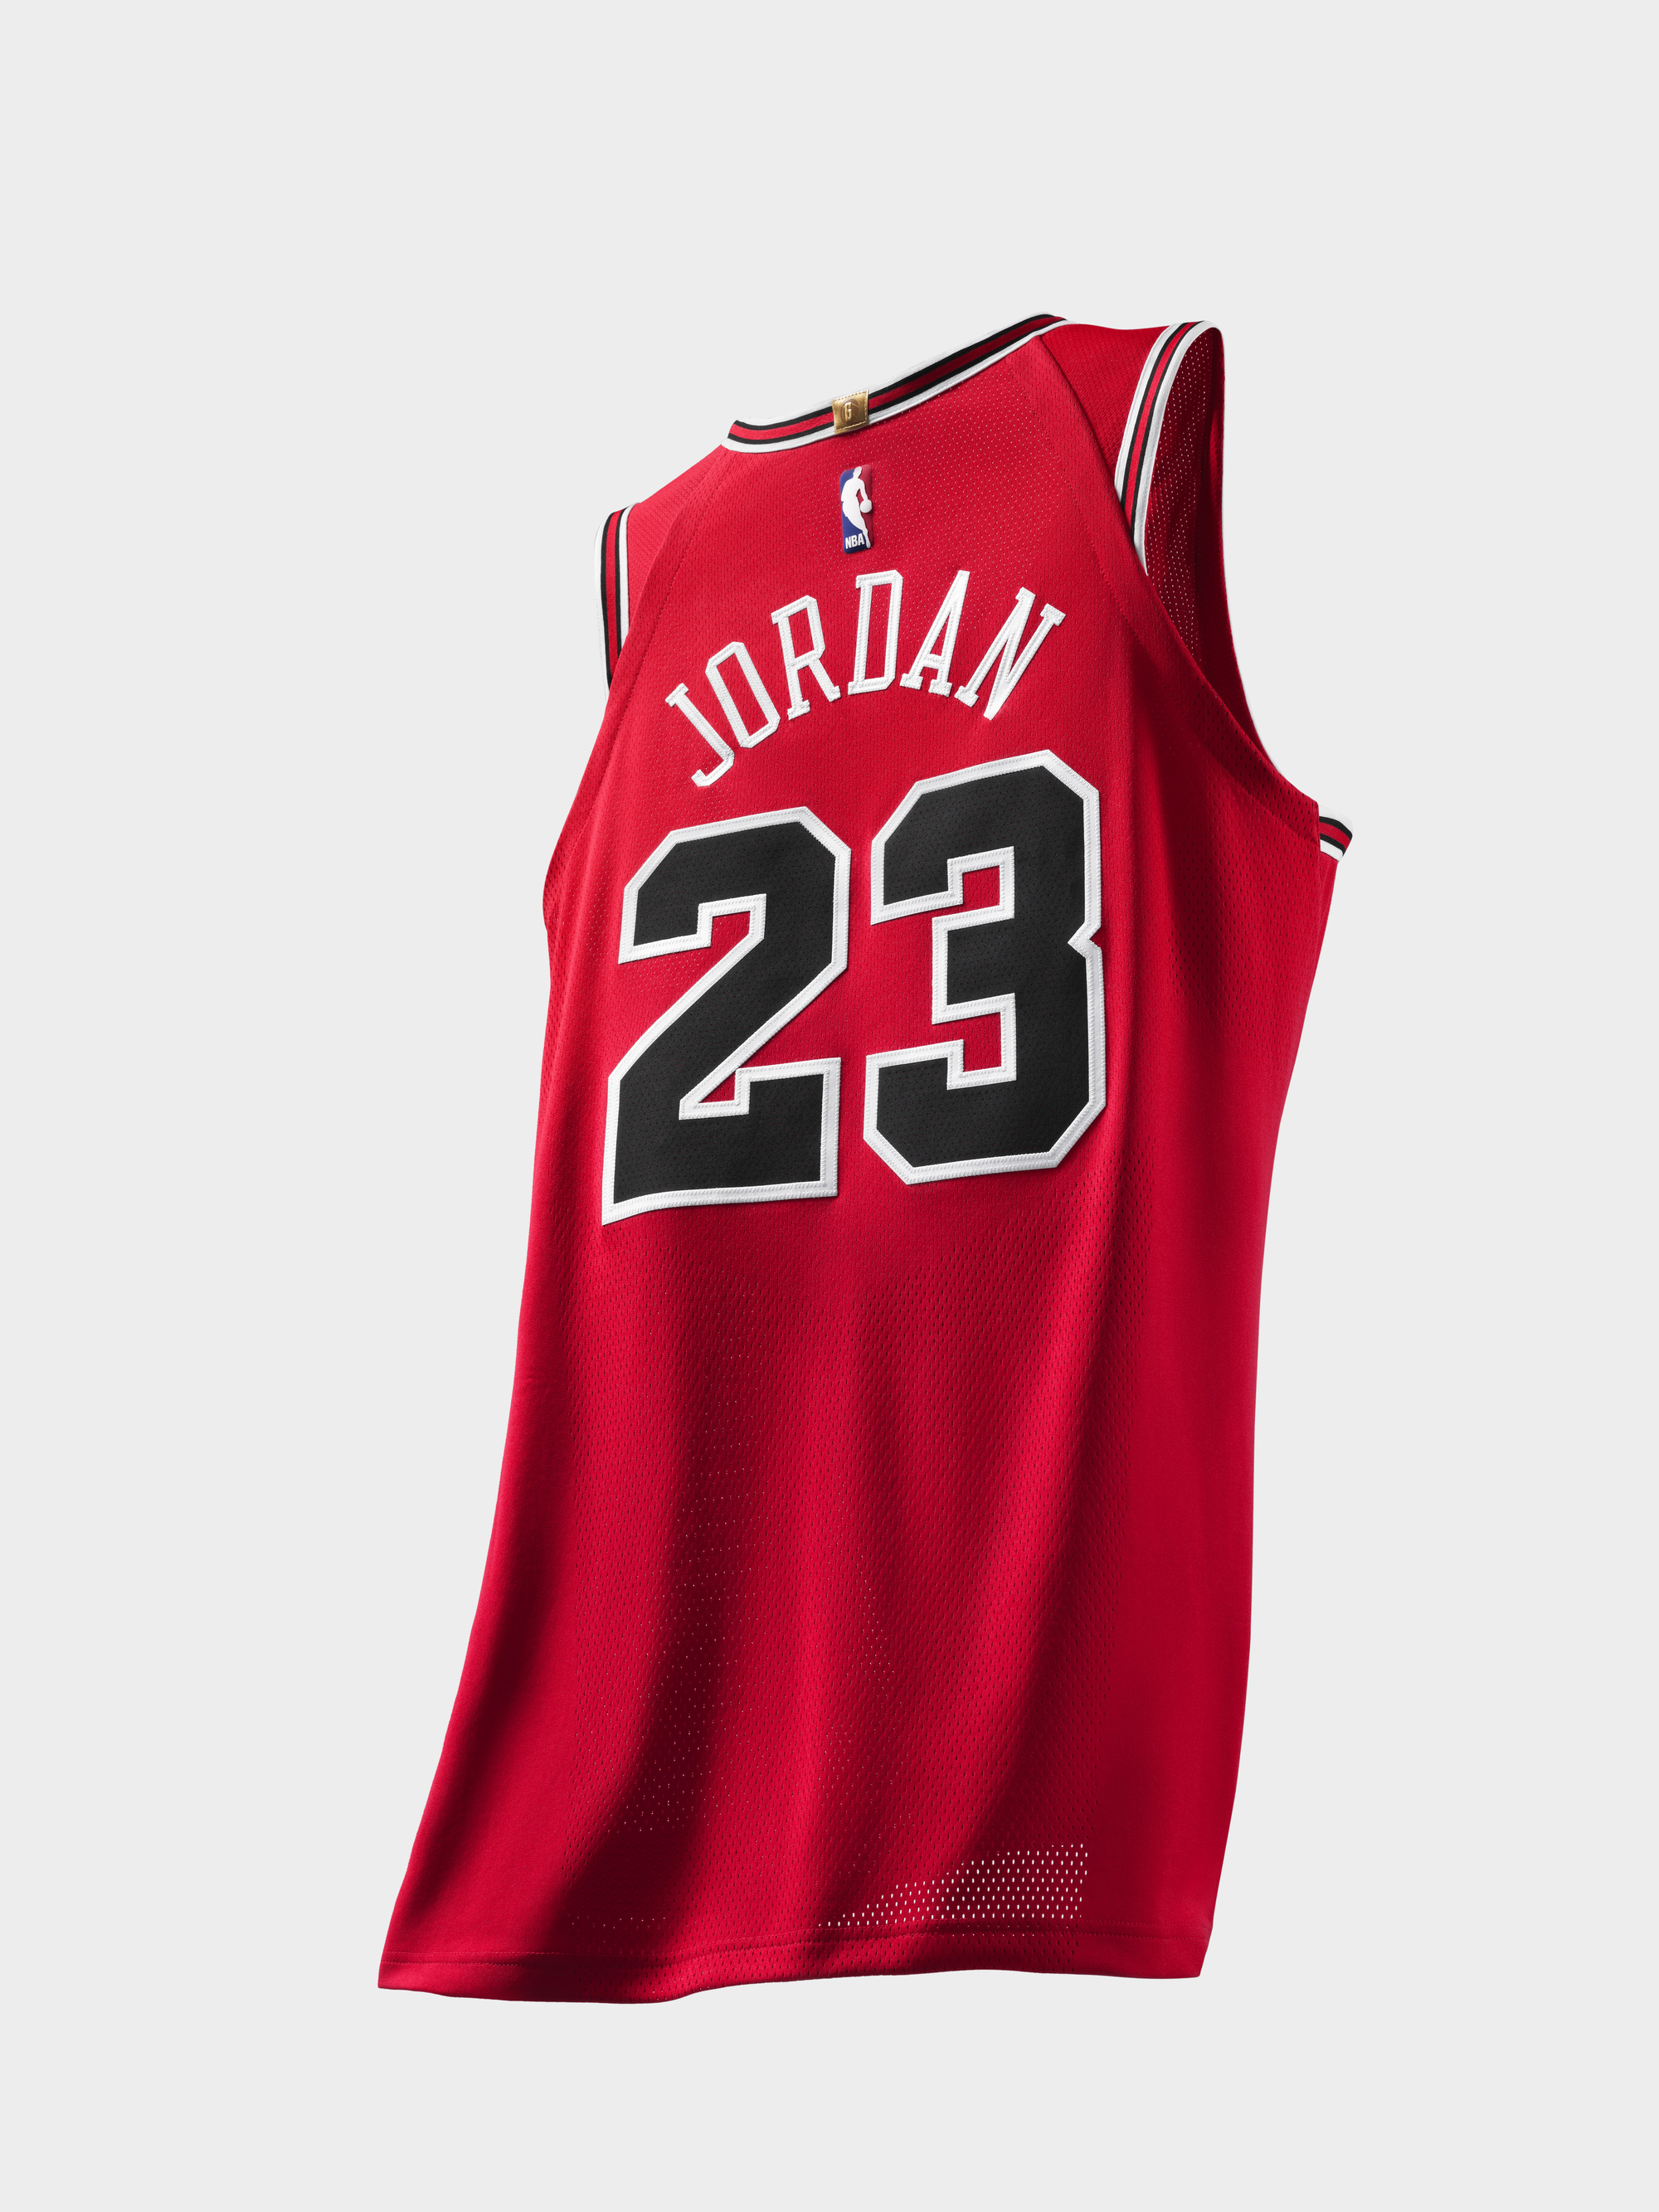 Michael Jordan authentic jersey last shot 3